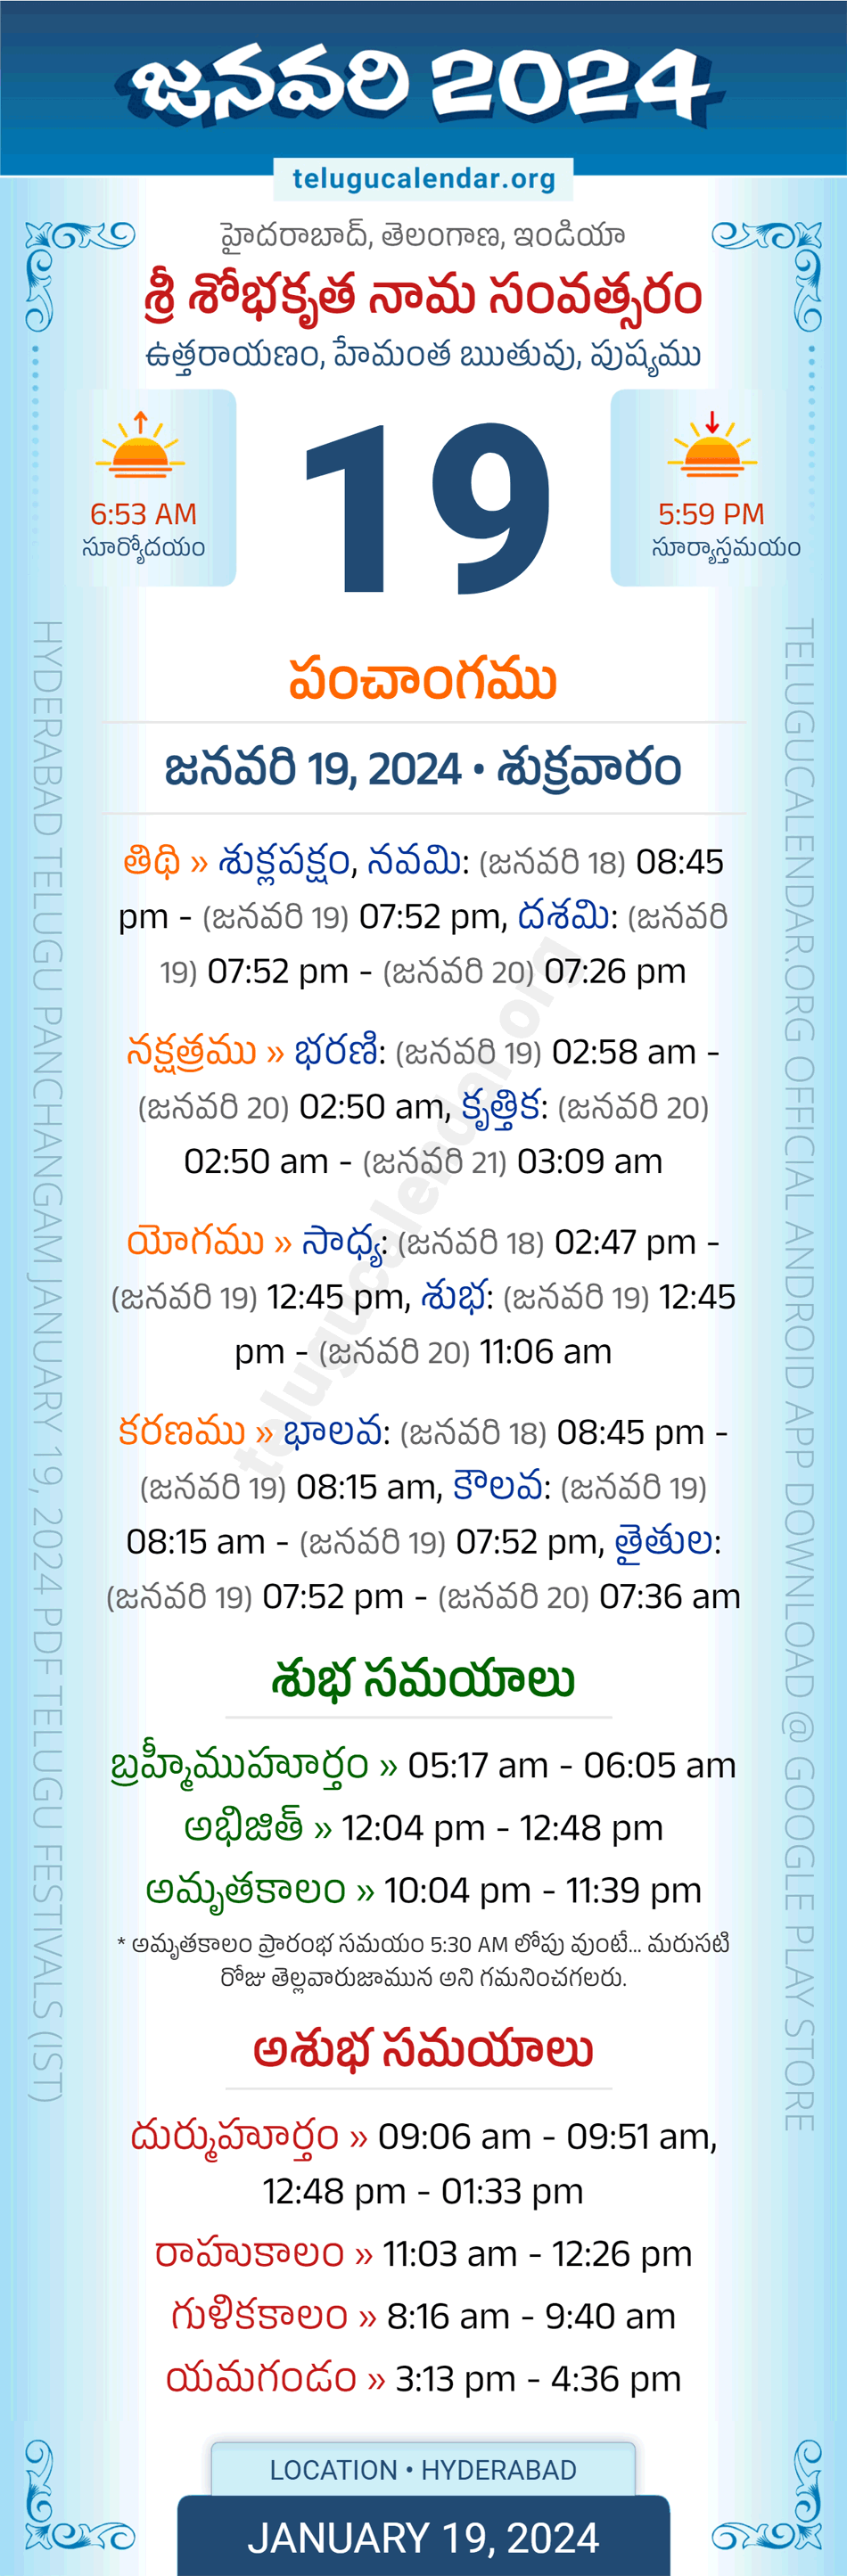 January 19, 2024 Telugu Calendar Panchangam Telangana